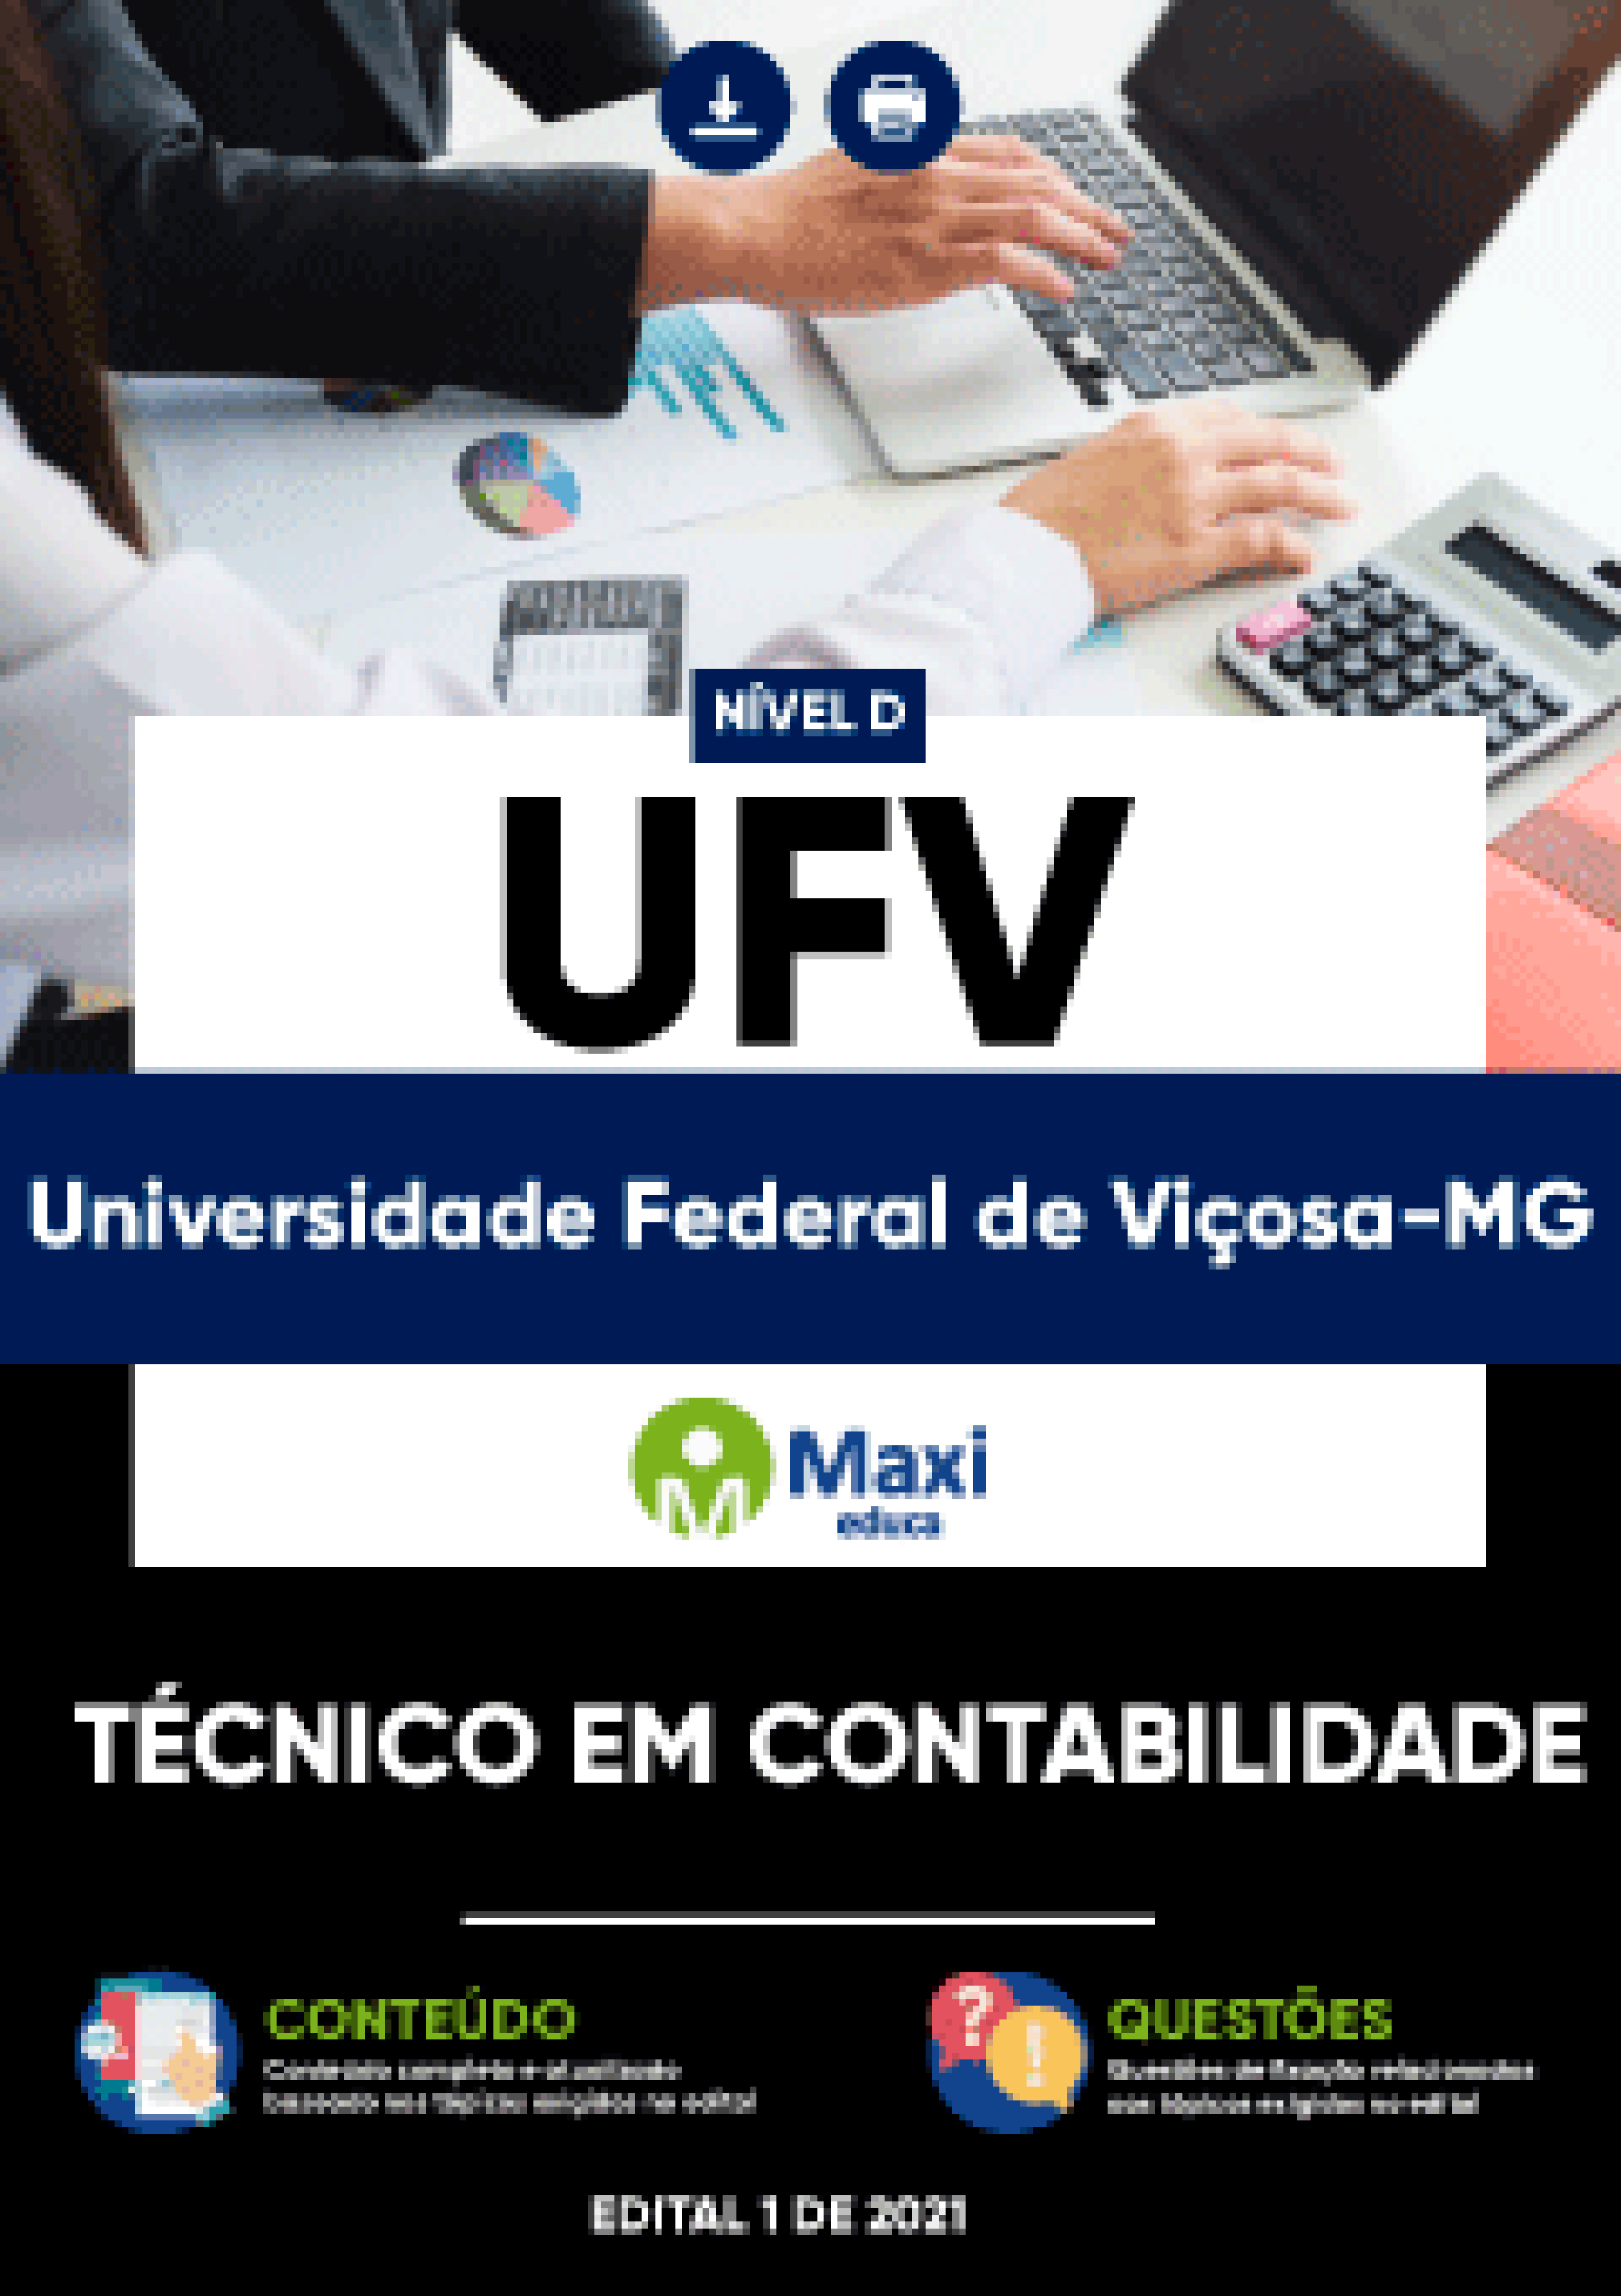 Apostila Digital em PDF da Universidade Federal de Viçosa-MG - UFV